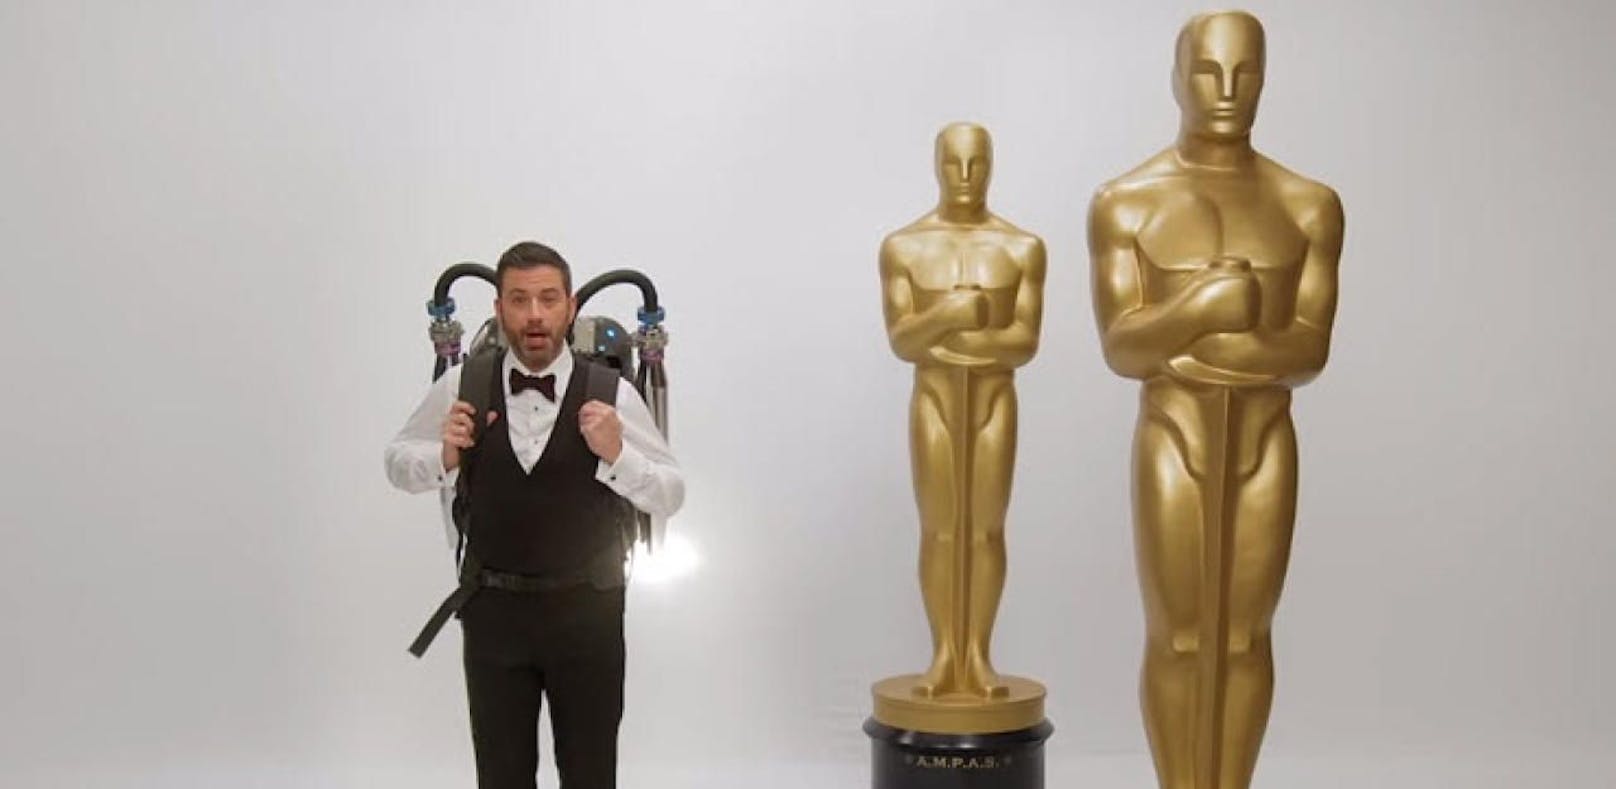 Jimmy Kimmel startet mit Jetpack in die Oscar-Show